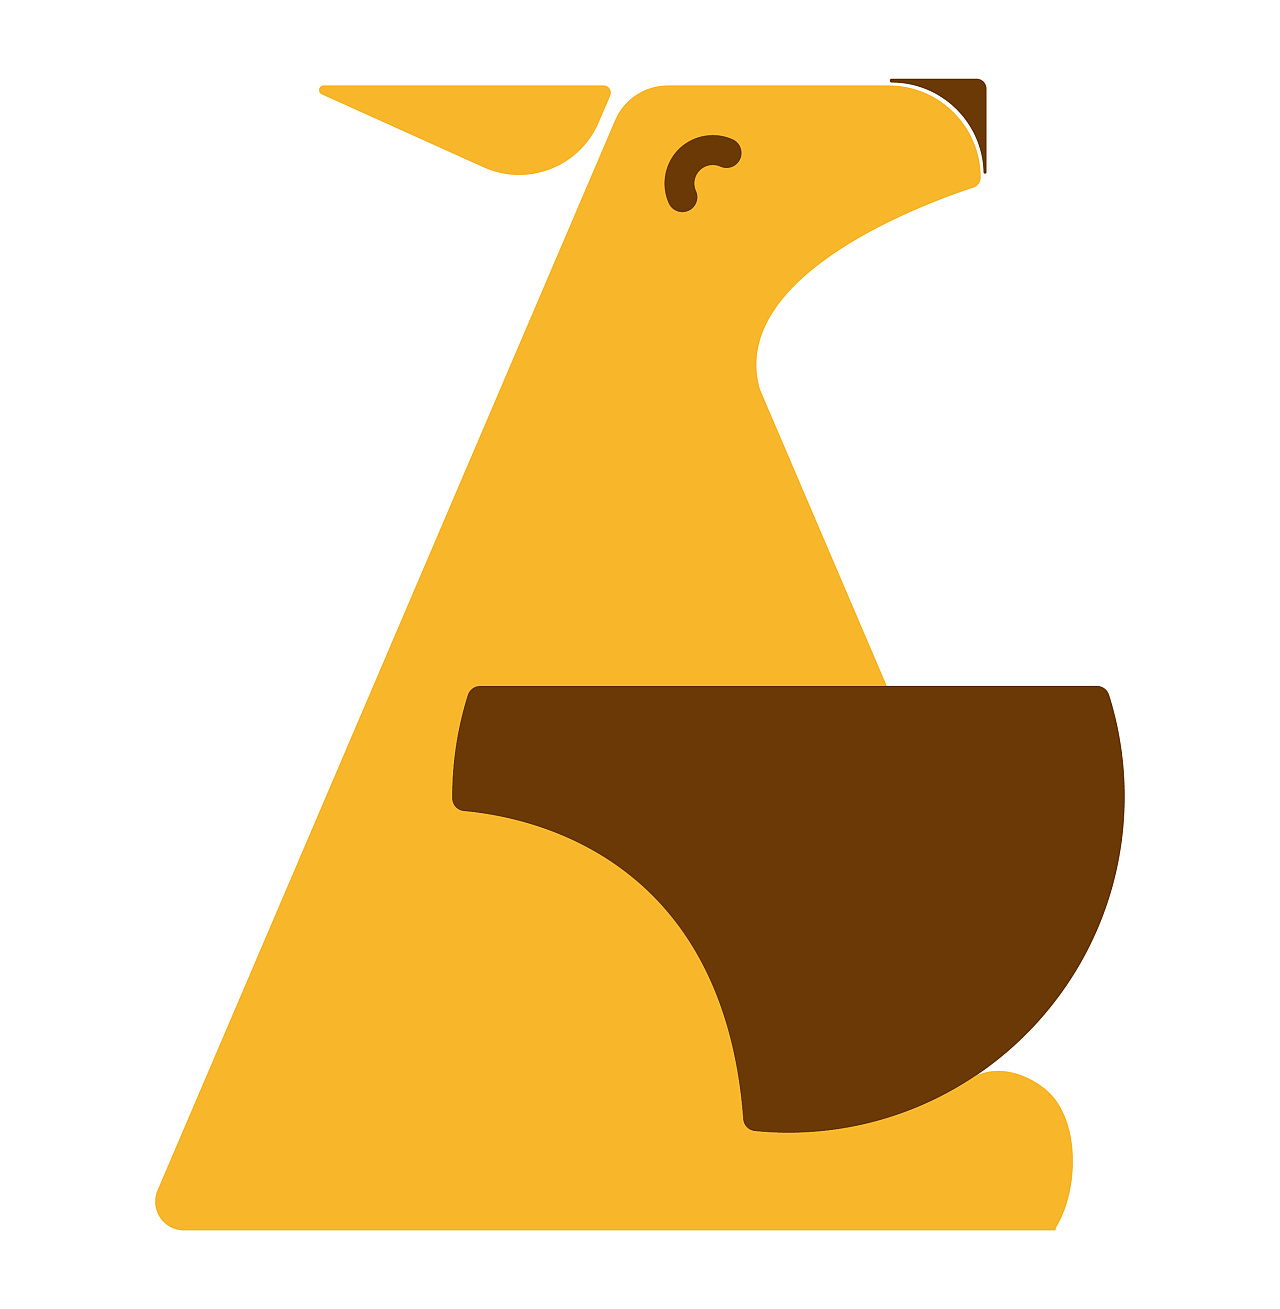 袋鼠主题图形logo      